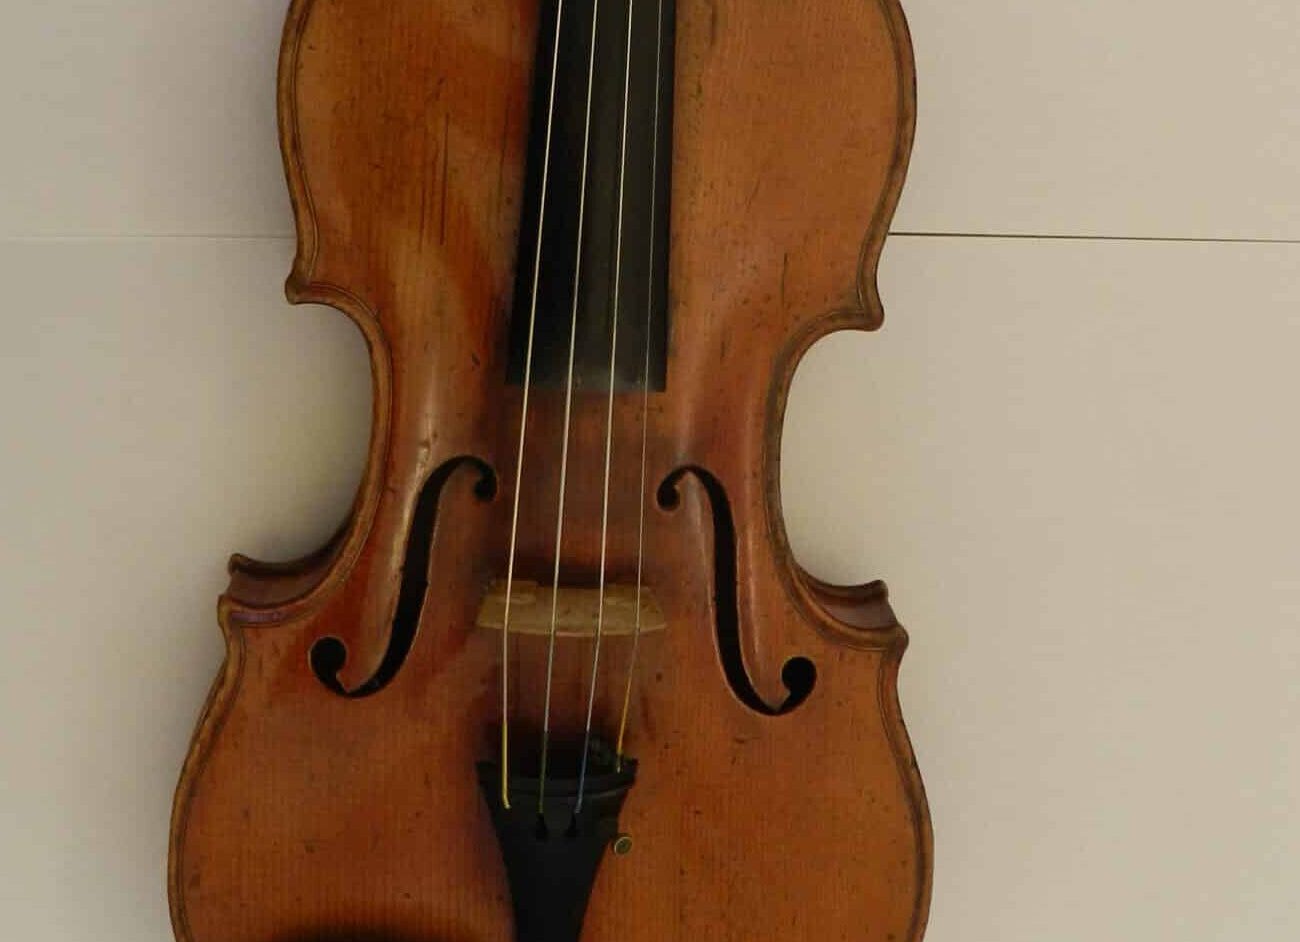 Il violino Rocca torna a casa, era stato rubato negli anni ’90: stamattina la restituzione a Palermo